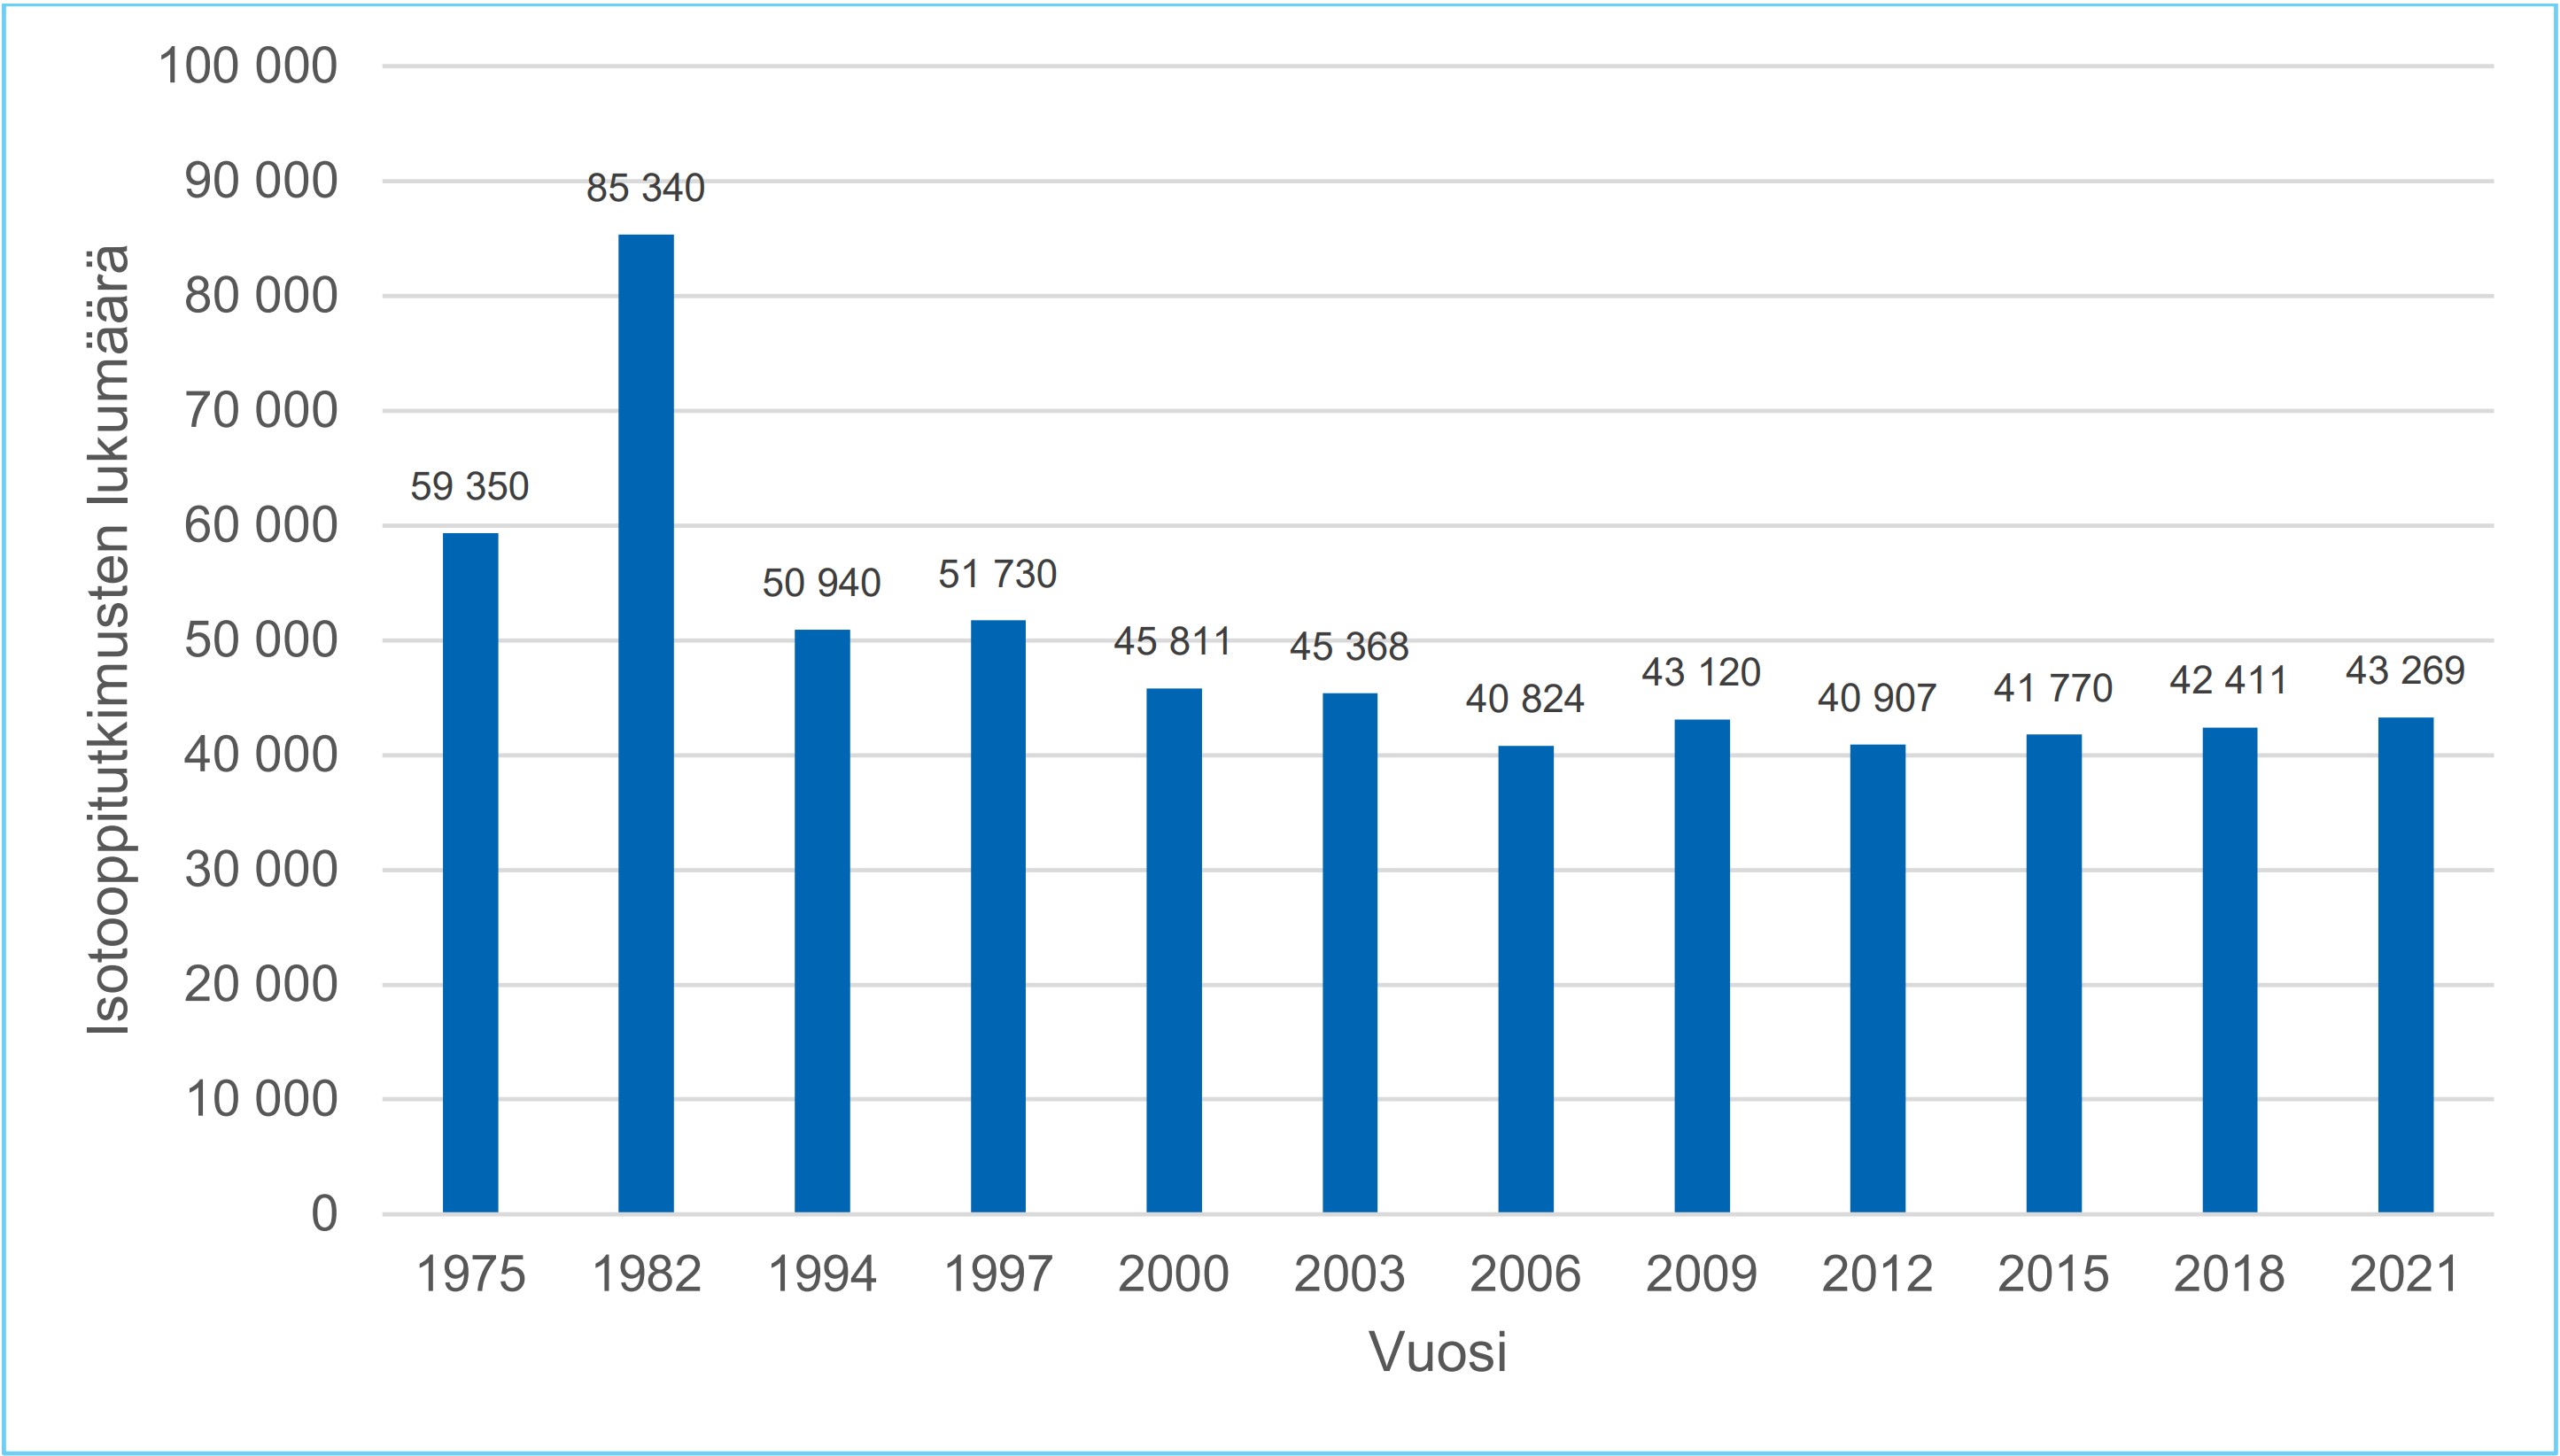 sotooppitutkimusten määriä on Suomessa seurattu vuodesta 1975. Vuonna 2021 tutkimuksia tehtiin 43269.